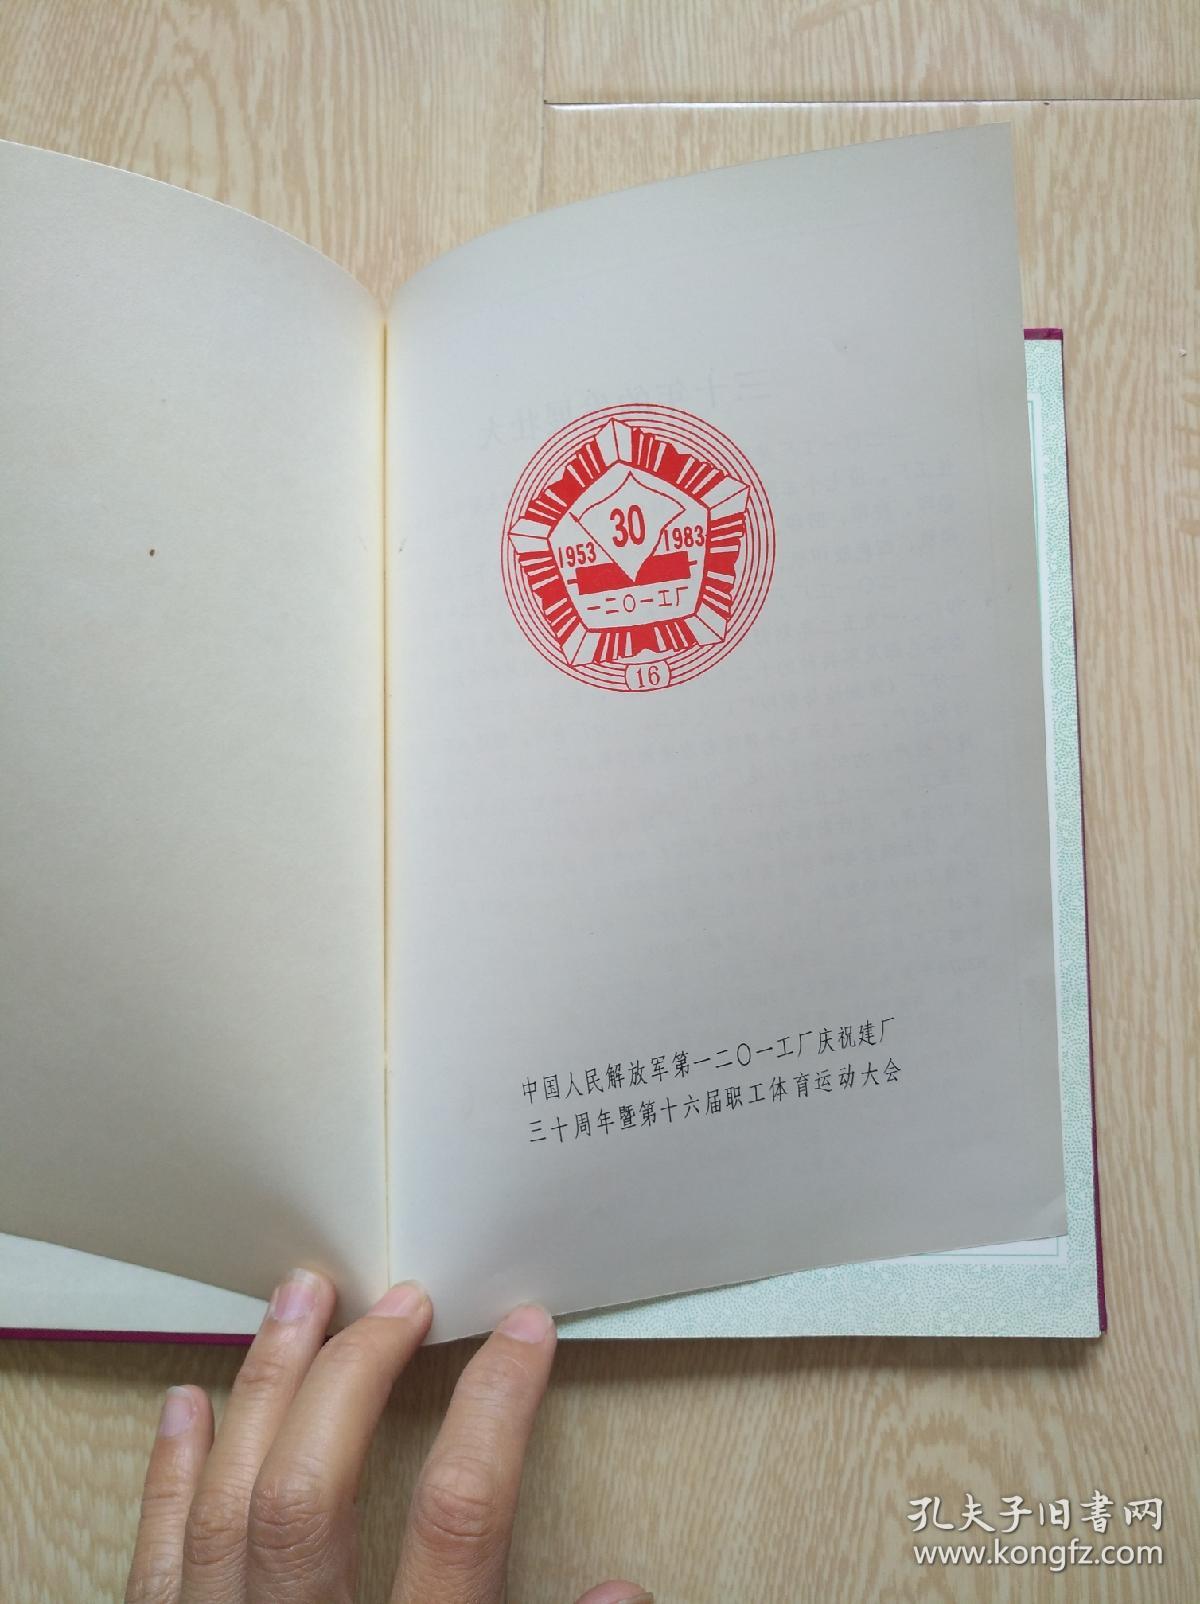 纪念册1953-1983——  中国人民解放军第1201工厂庆祝建厂三十周年暨第十六届职工体育运动大会